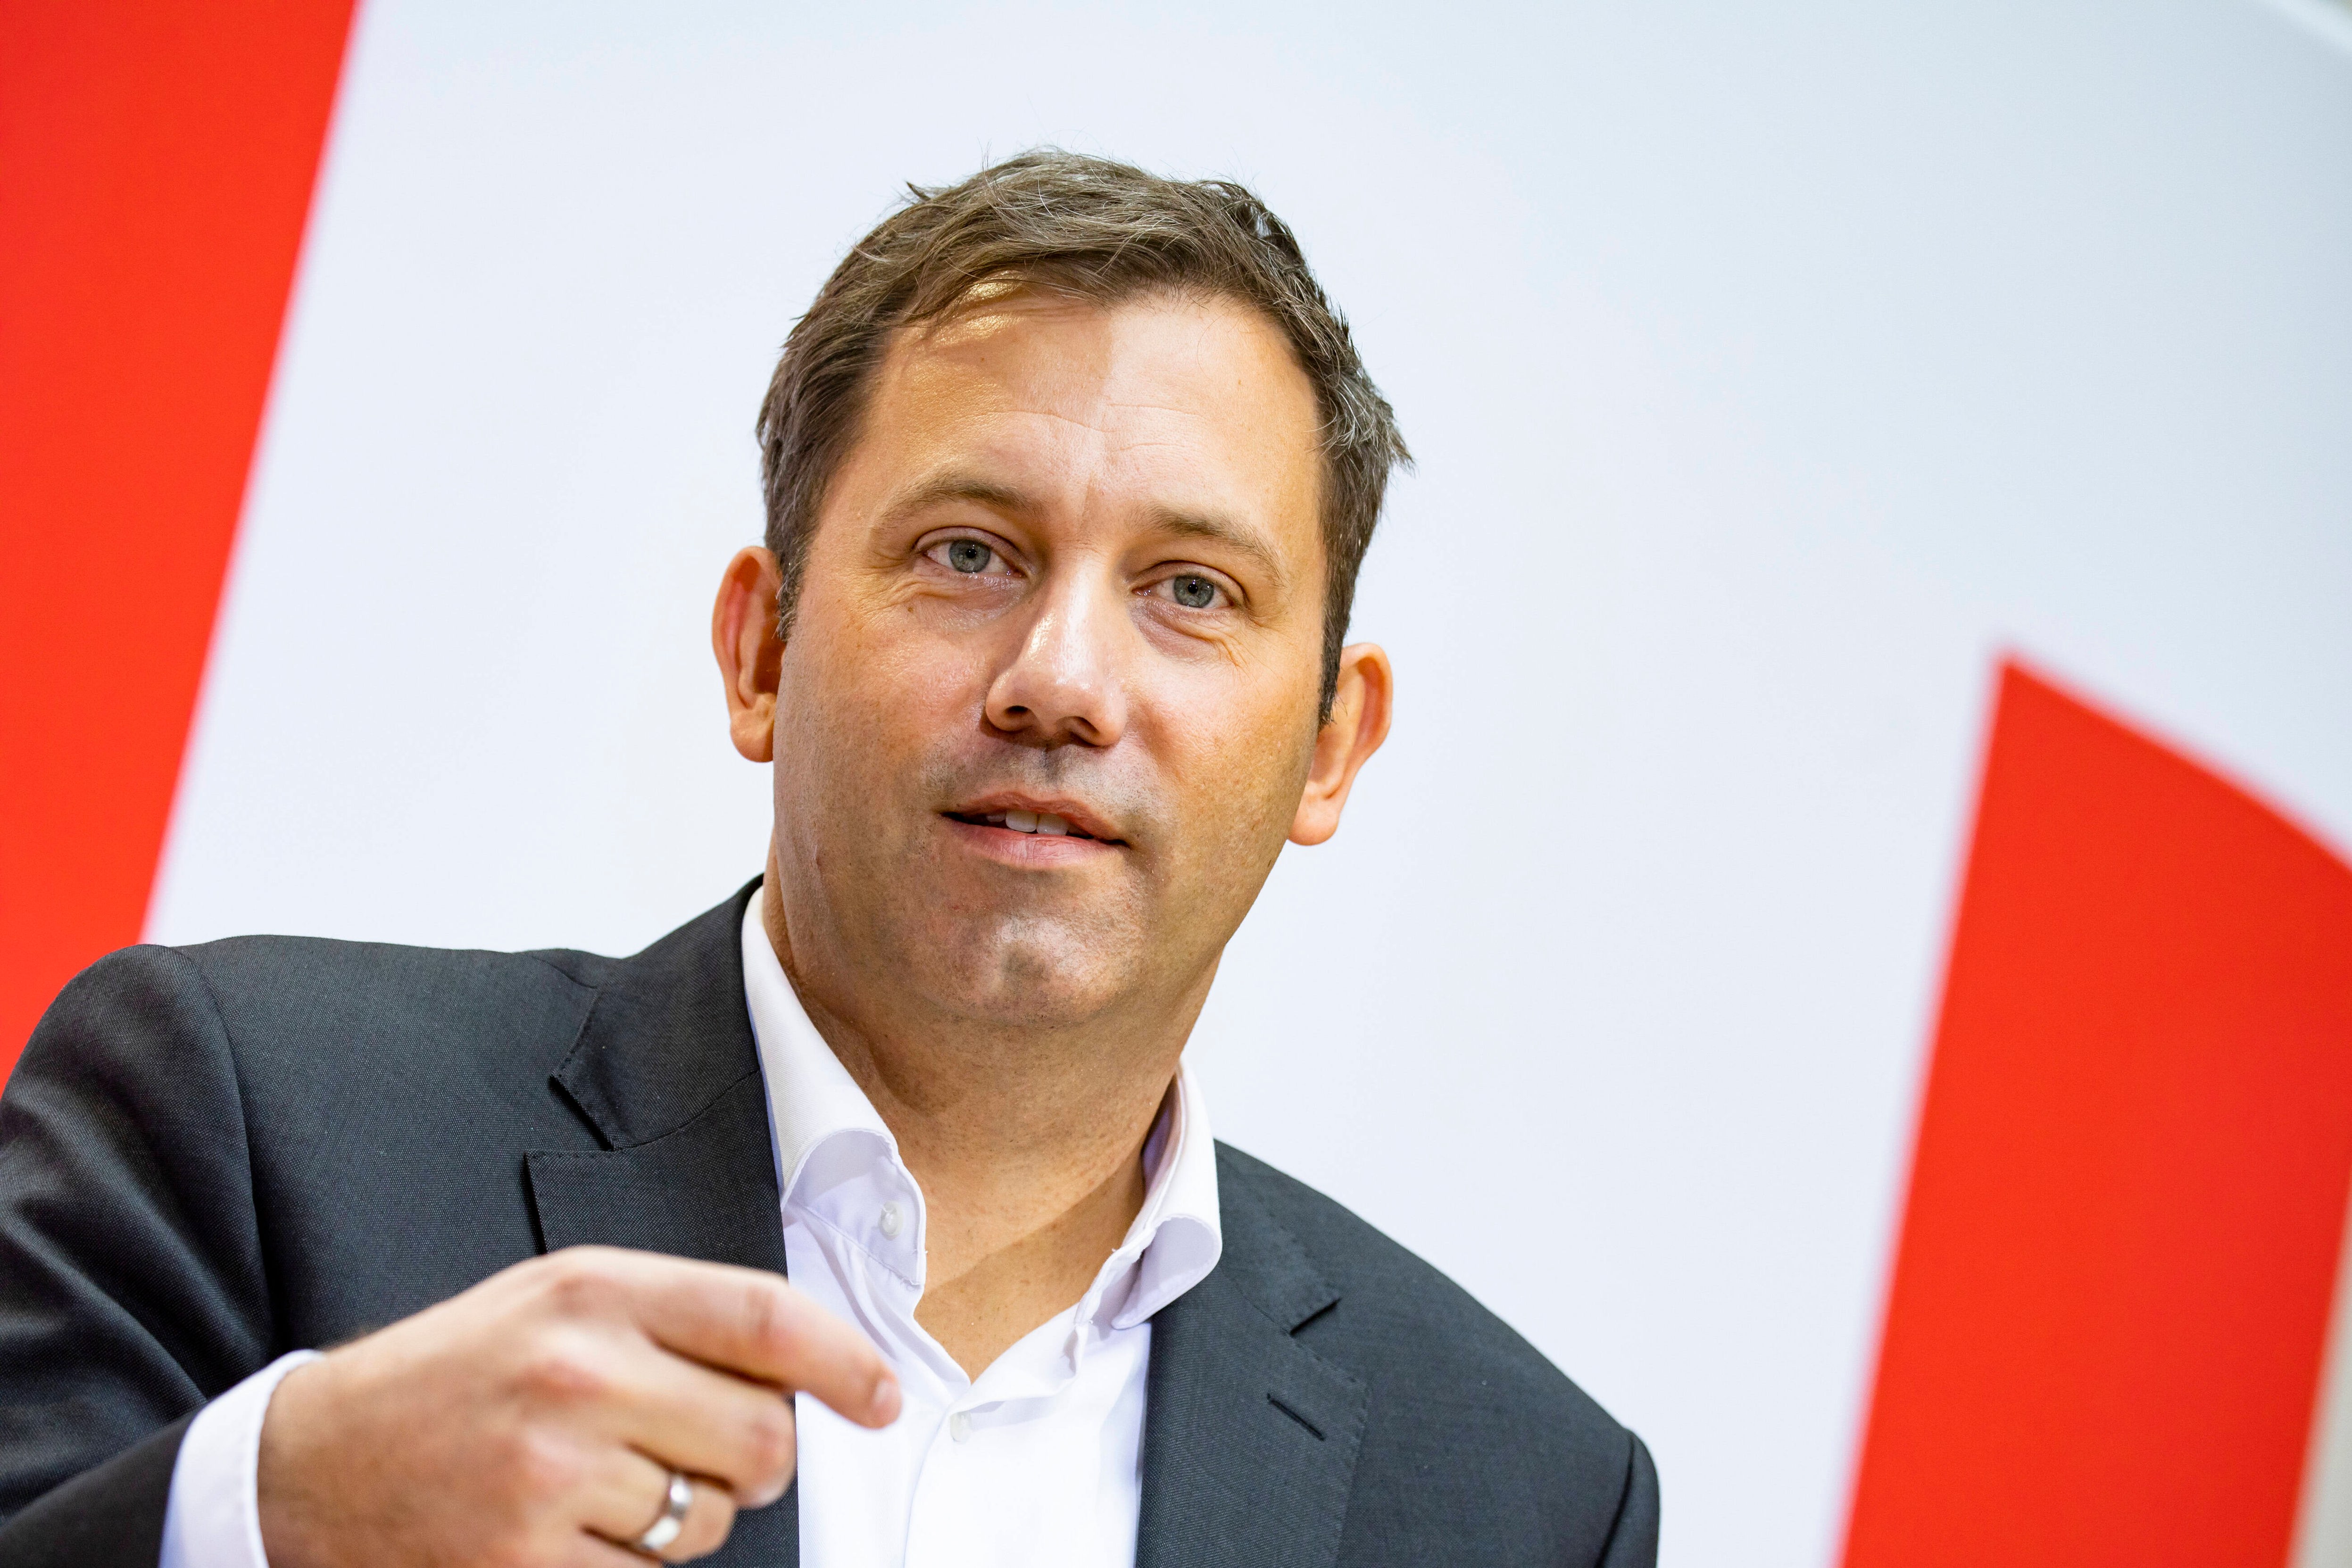 Positionspapier - SPD will ihre Außenpolitik neu ausrichten